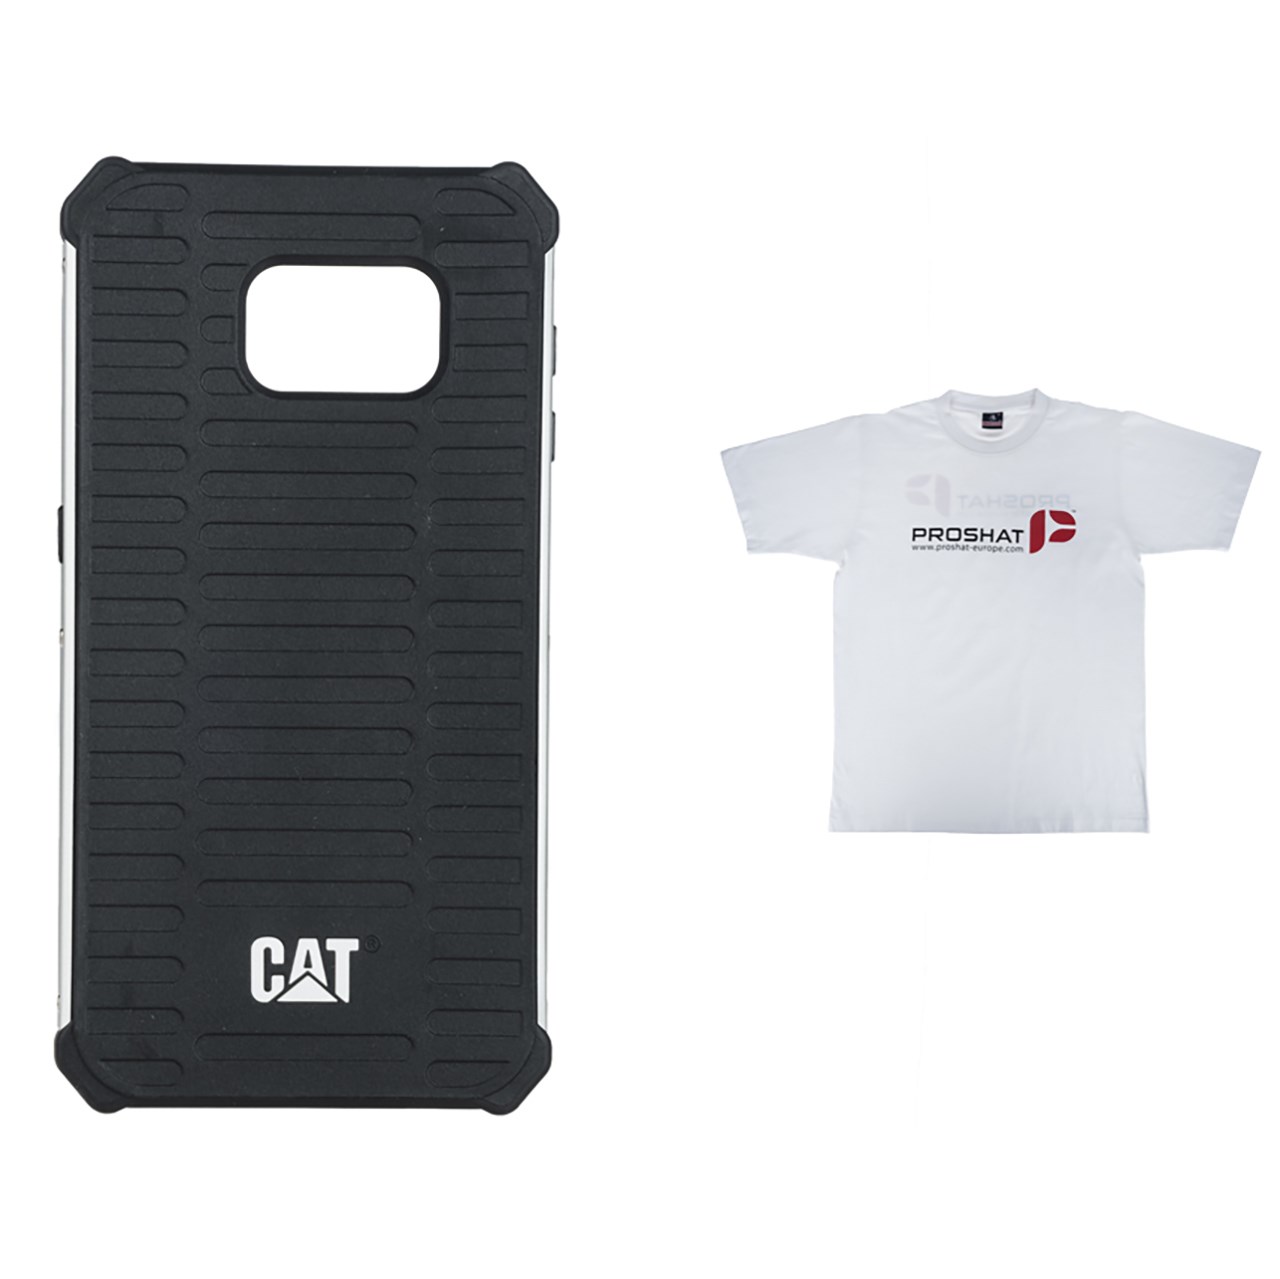 کاور کاترپیلار مدل Active Urban Rugged مناسب برای گوشی موبایل سامسونگ Galaxy S6 همراه با تی شرت پروشات سفید